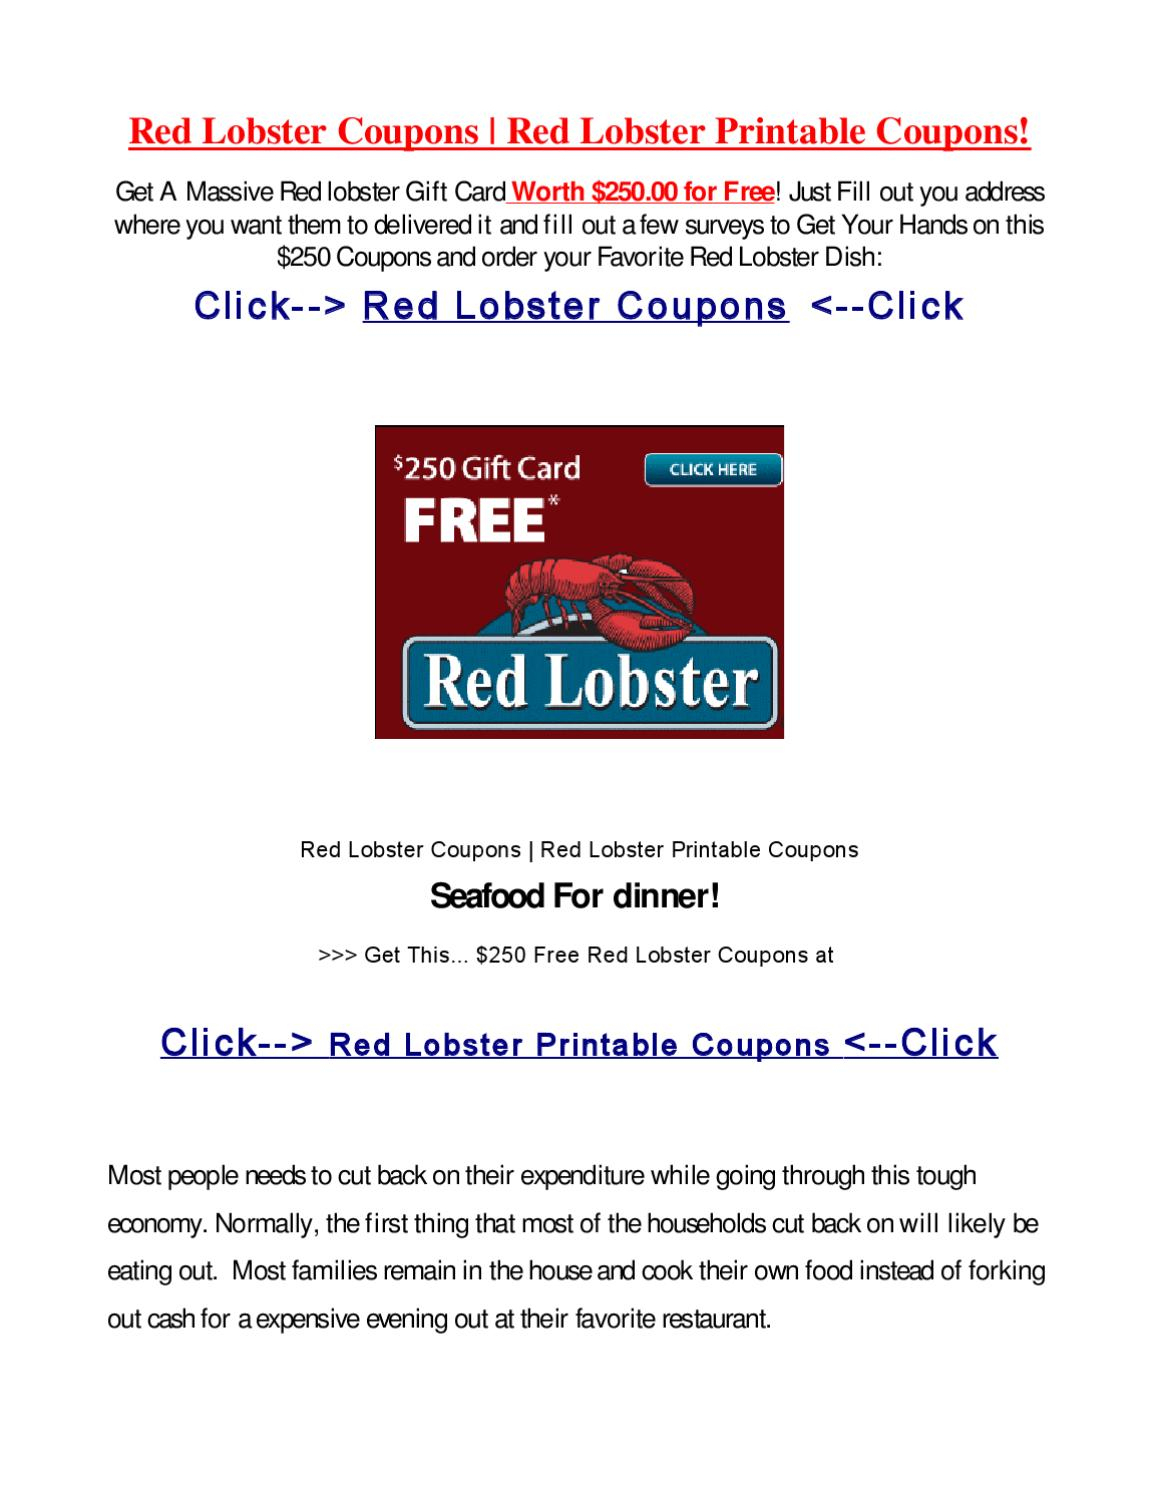 Red Lobster Printable Couponslisa Dm - Issuu - Free Printable Red Lobster Coupons